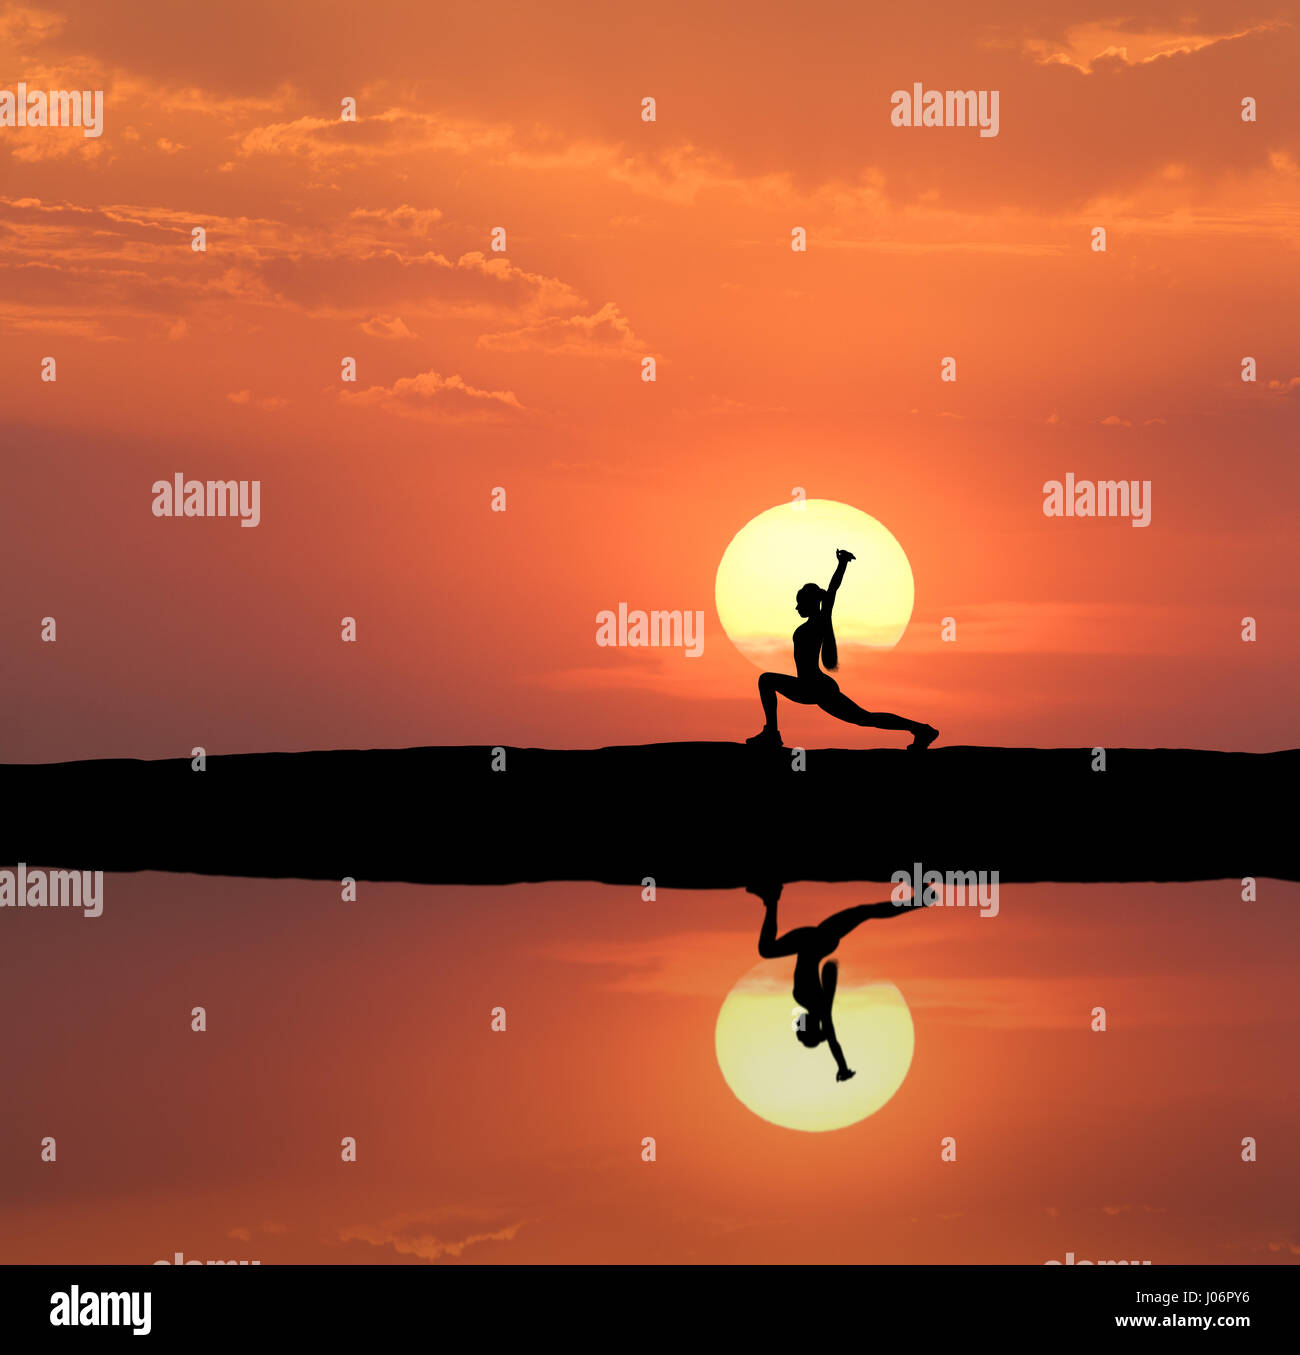 Silhouette einer ständigen sportliche Frau Yoga zu praktizieren mit auferweckt Arme auf dem Hügel nahe dem See mit Himmel Spiegelung im Wasser. Sonne und Orange Himmel w Stockfoto